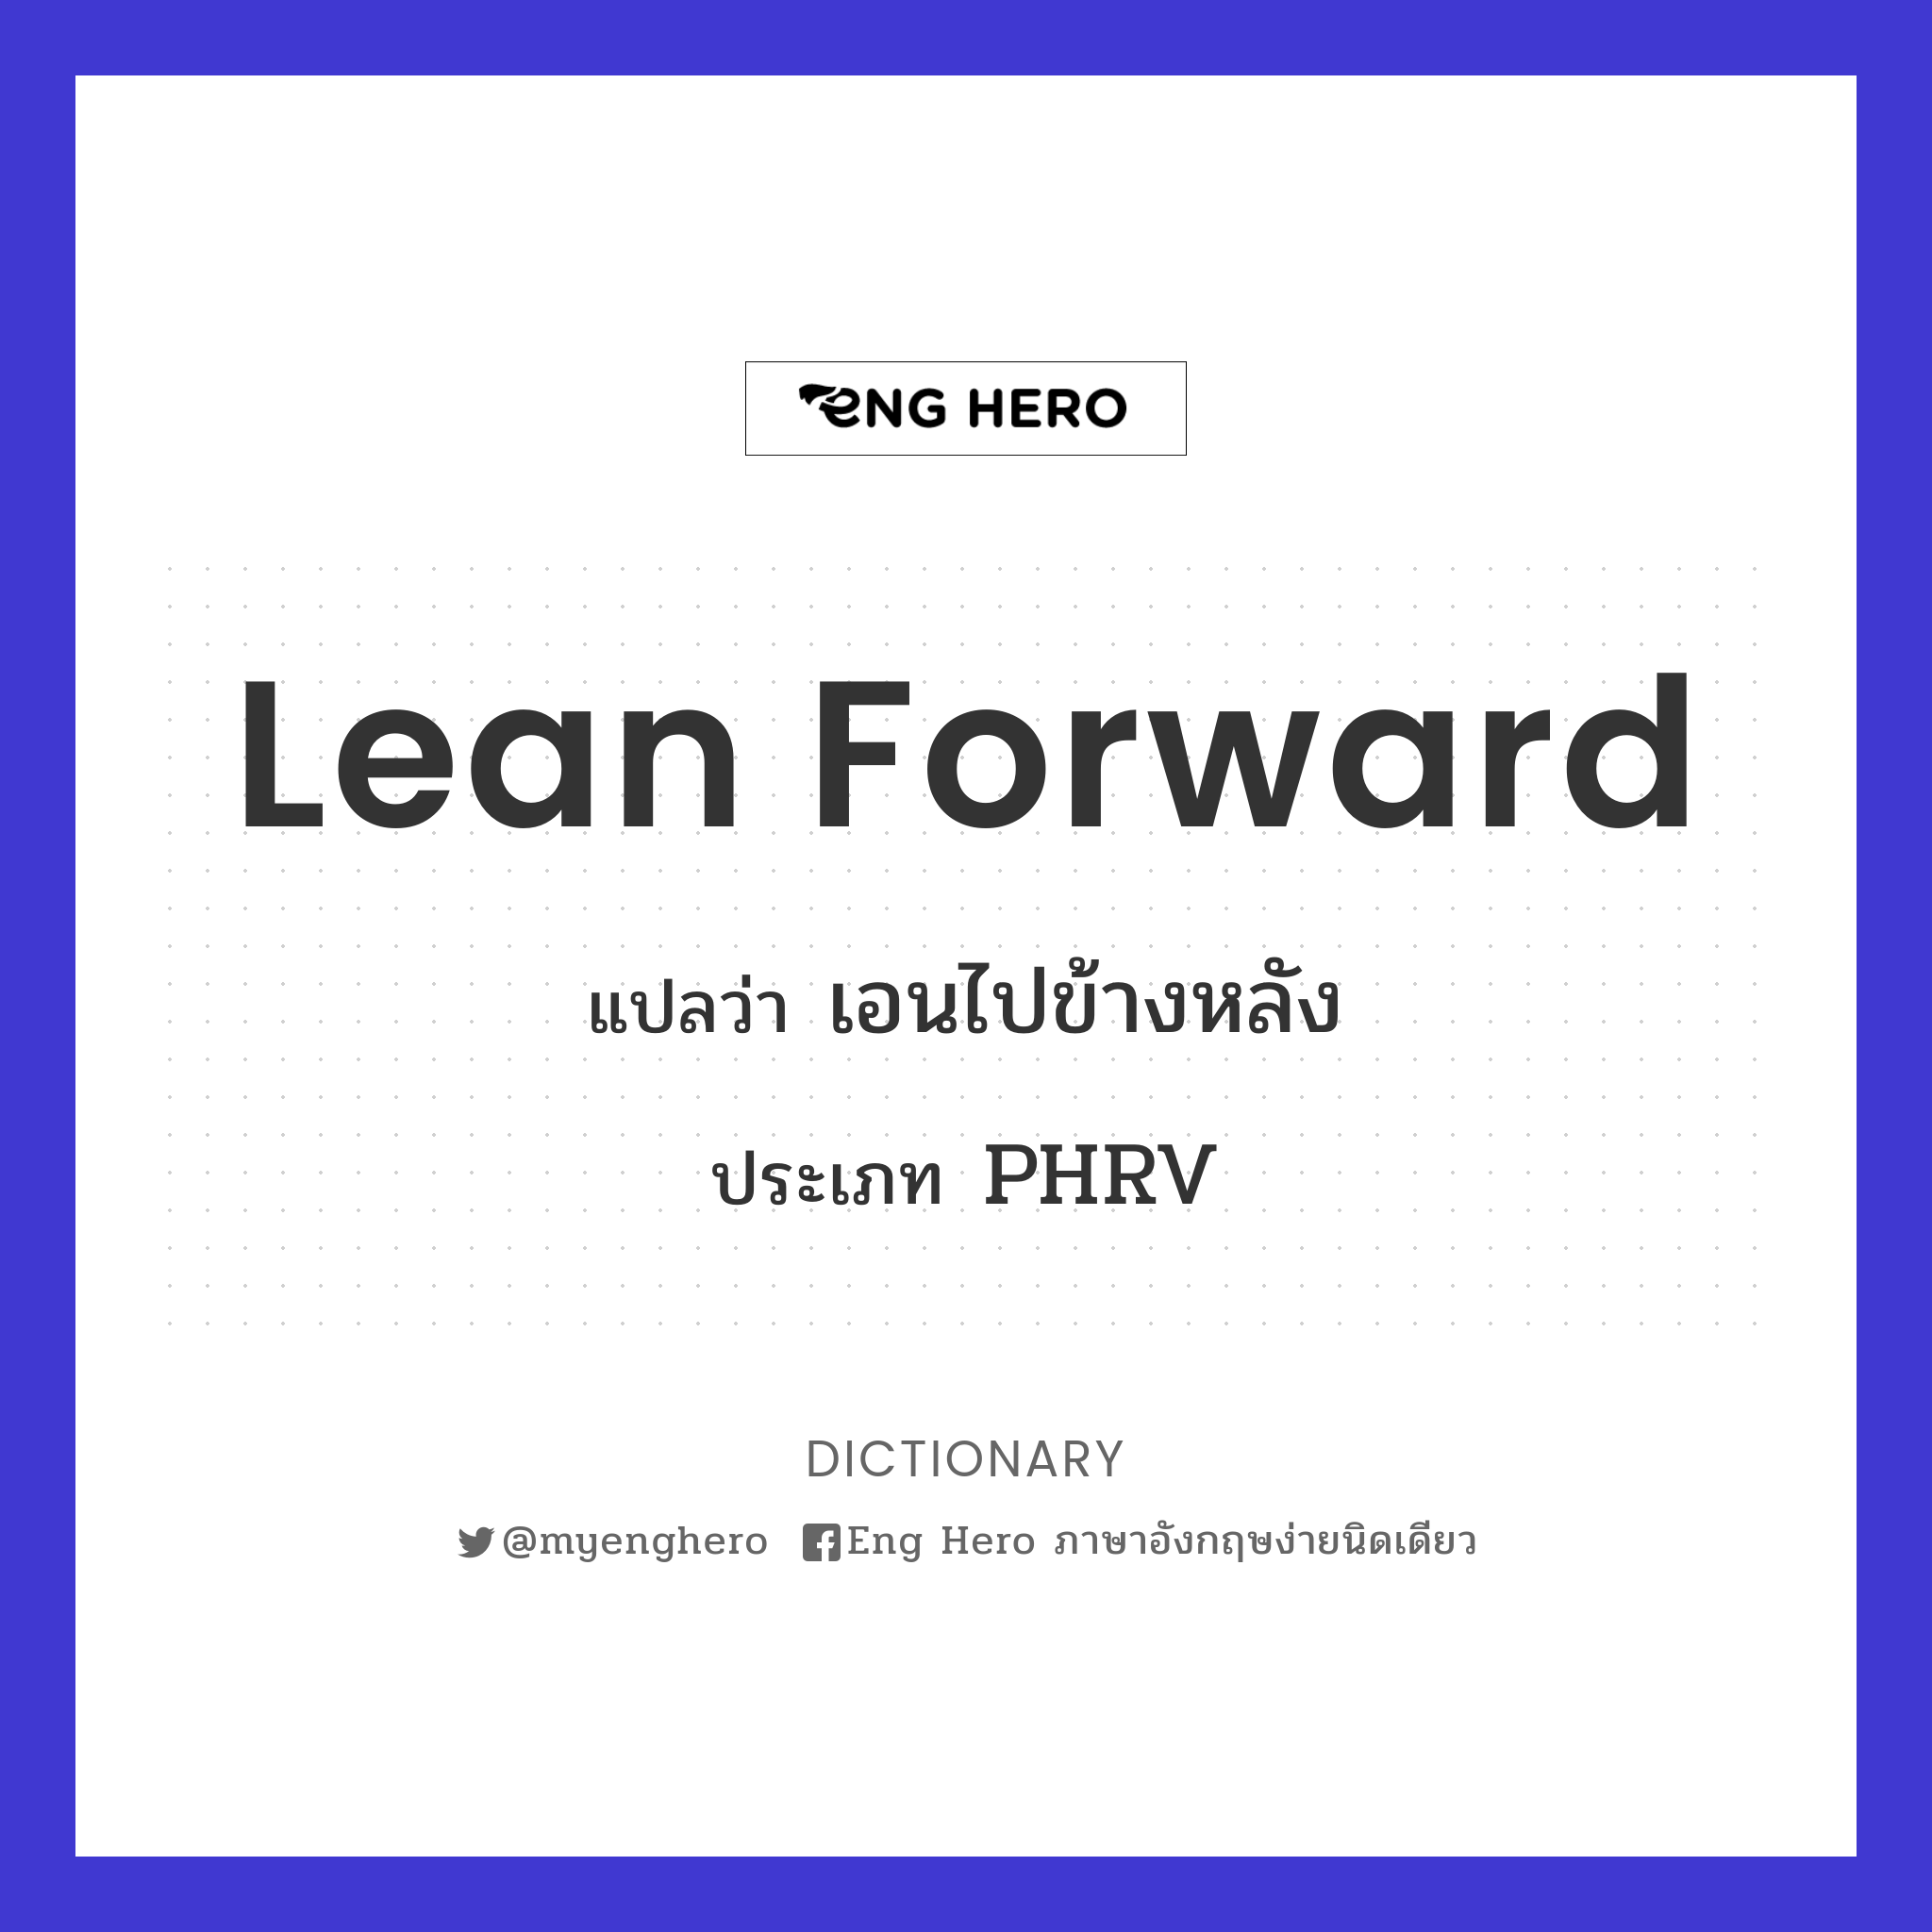 lean forward